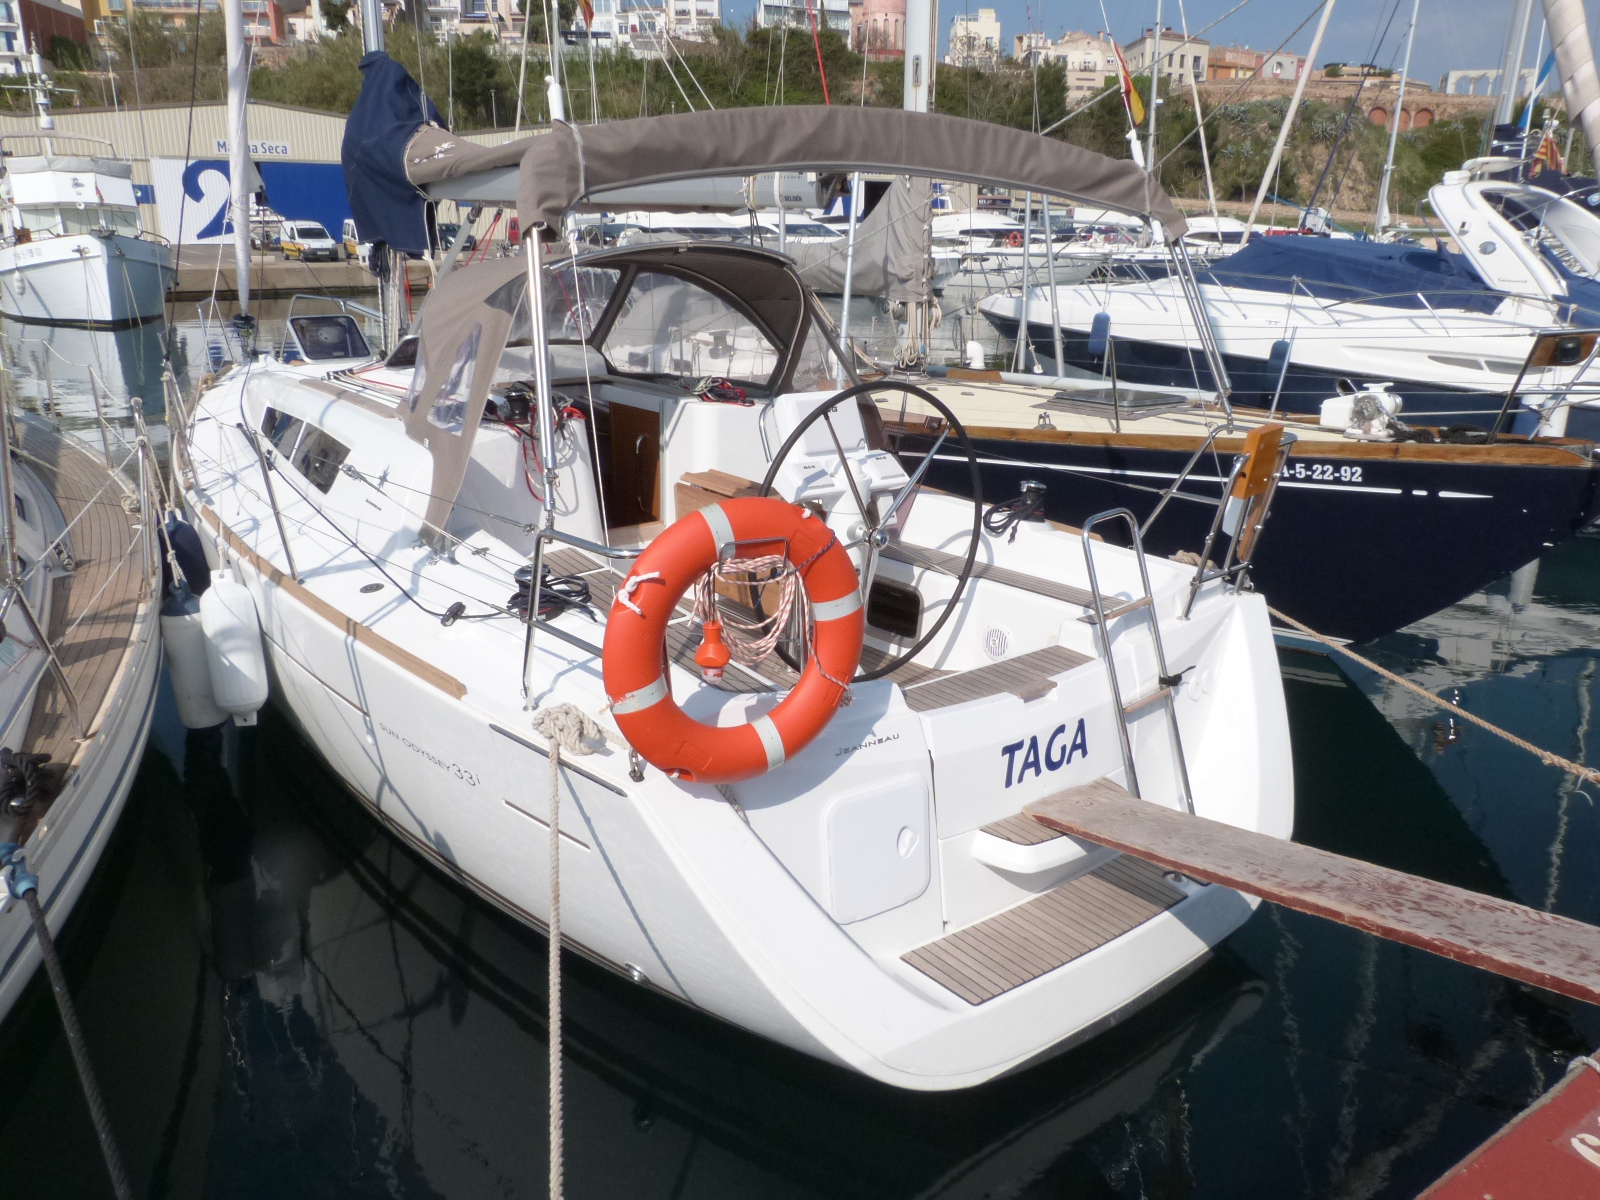 Sun Odyssey 33i - Yacht Charter Palamos & Boat hire in Spain Catalonia Costa Brava Girona Palamos Palamos 3